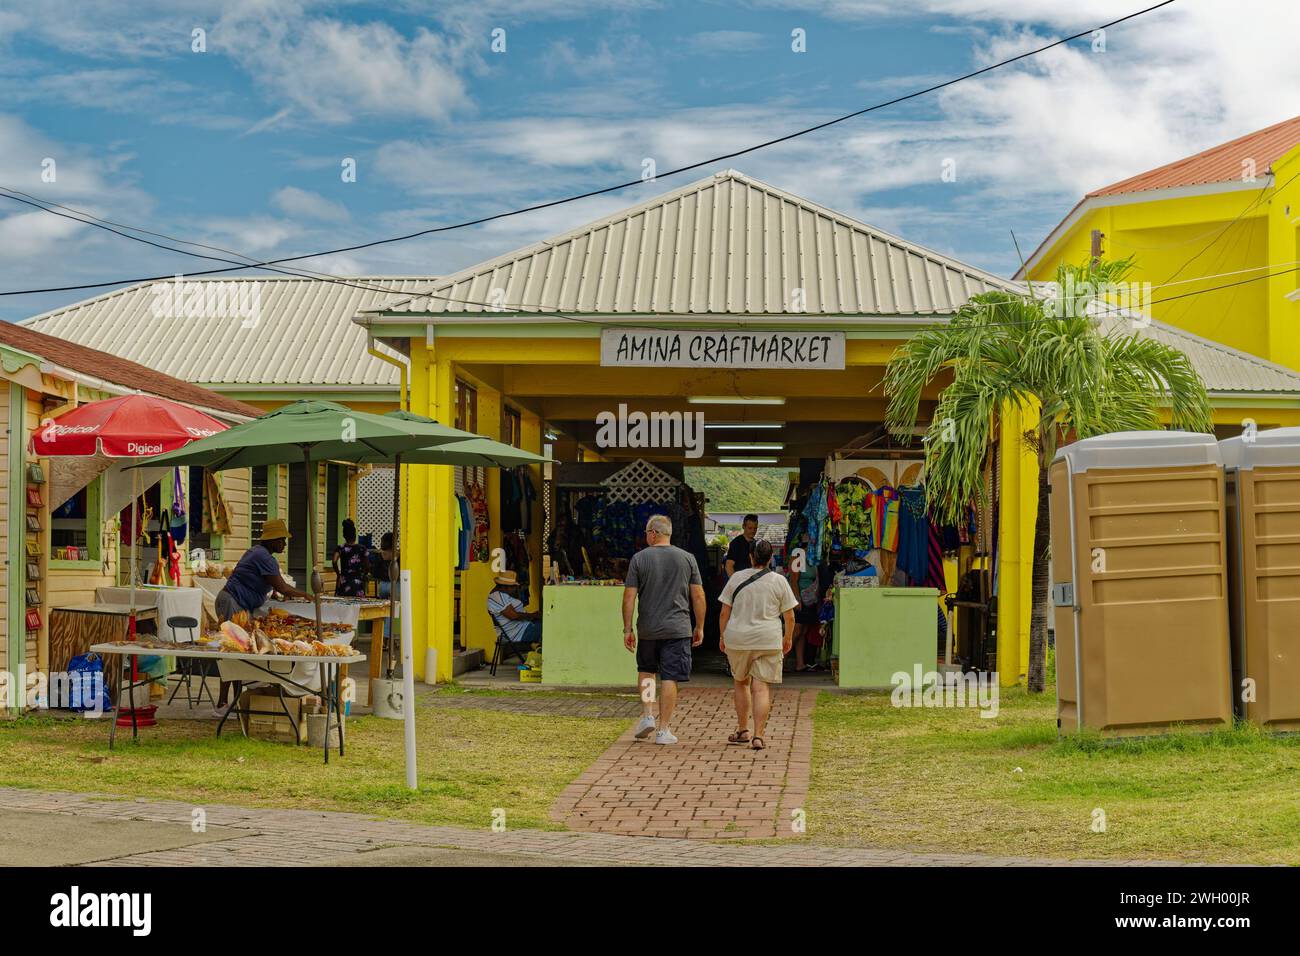 BASSETERRE, SAINT KITTS - 8 dicembre 2023: Port Zante è il porto di Basseterre, Saint Kitts, che è diventato una mecca dello shopping grazie alla crui Foto Stock